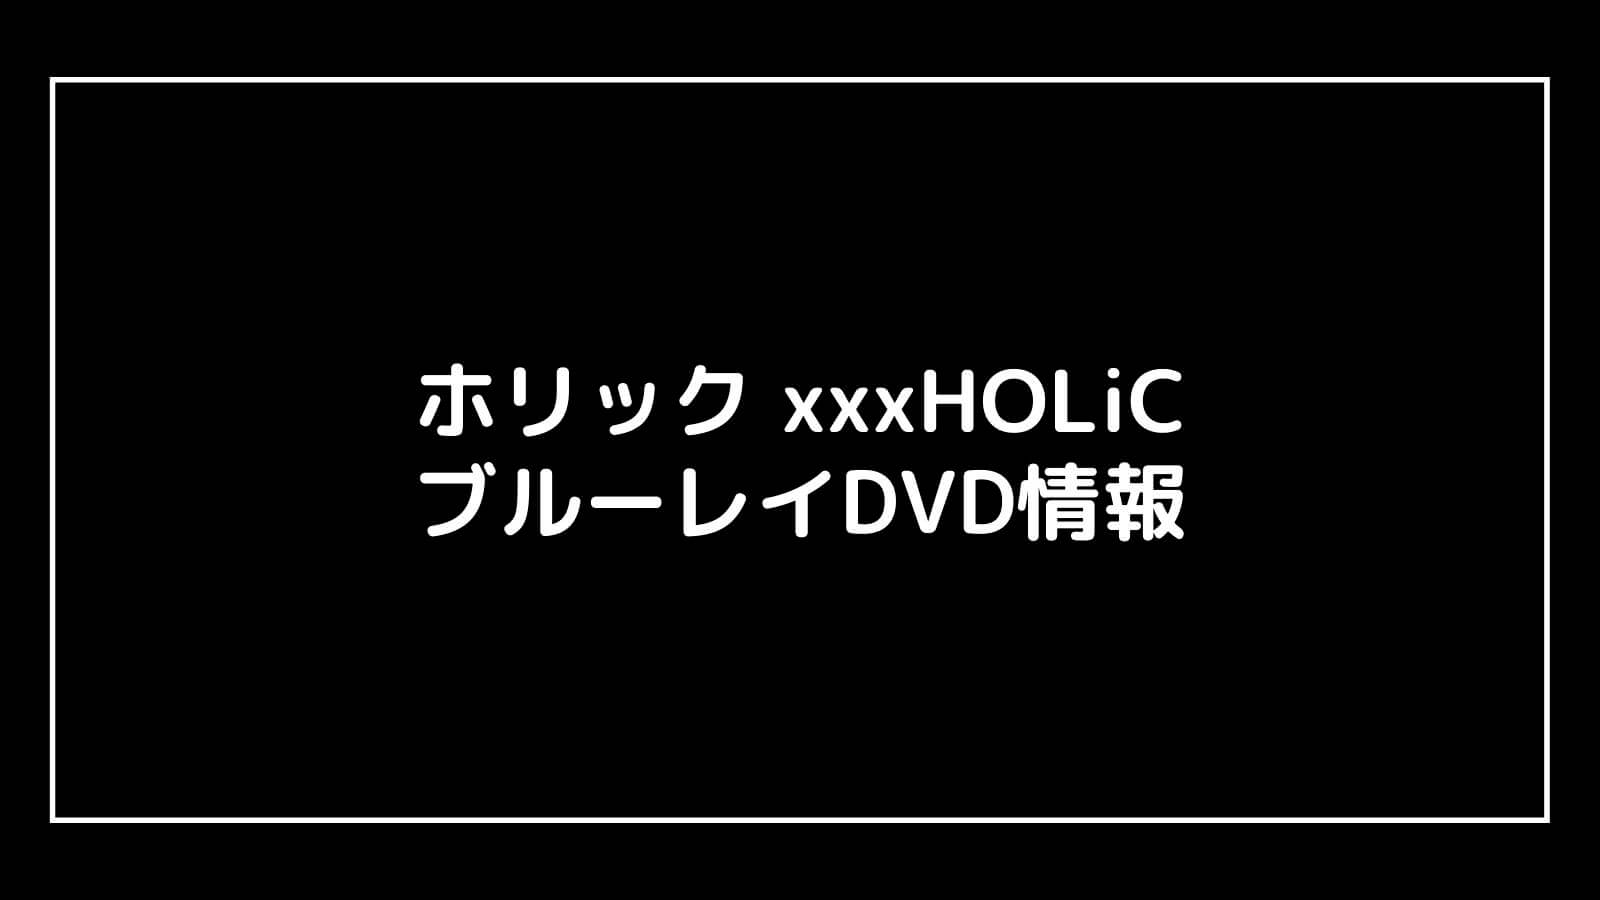 映画『ホリック xxxHOLiC』映画版の特典付きDVD情報まとめ｜円盤発売日と予約開始日はいつから？